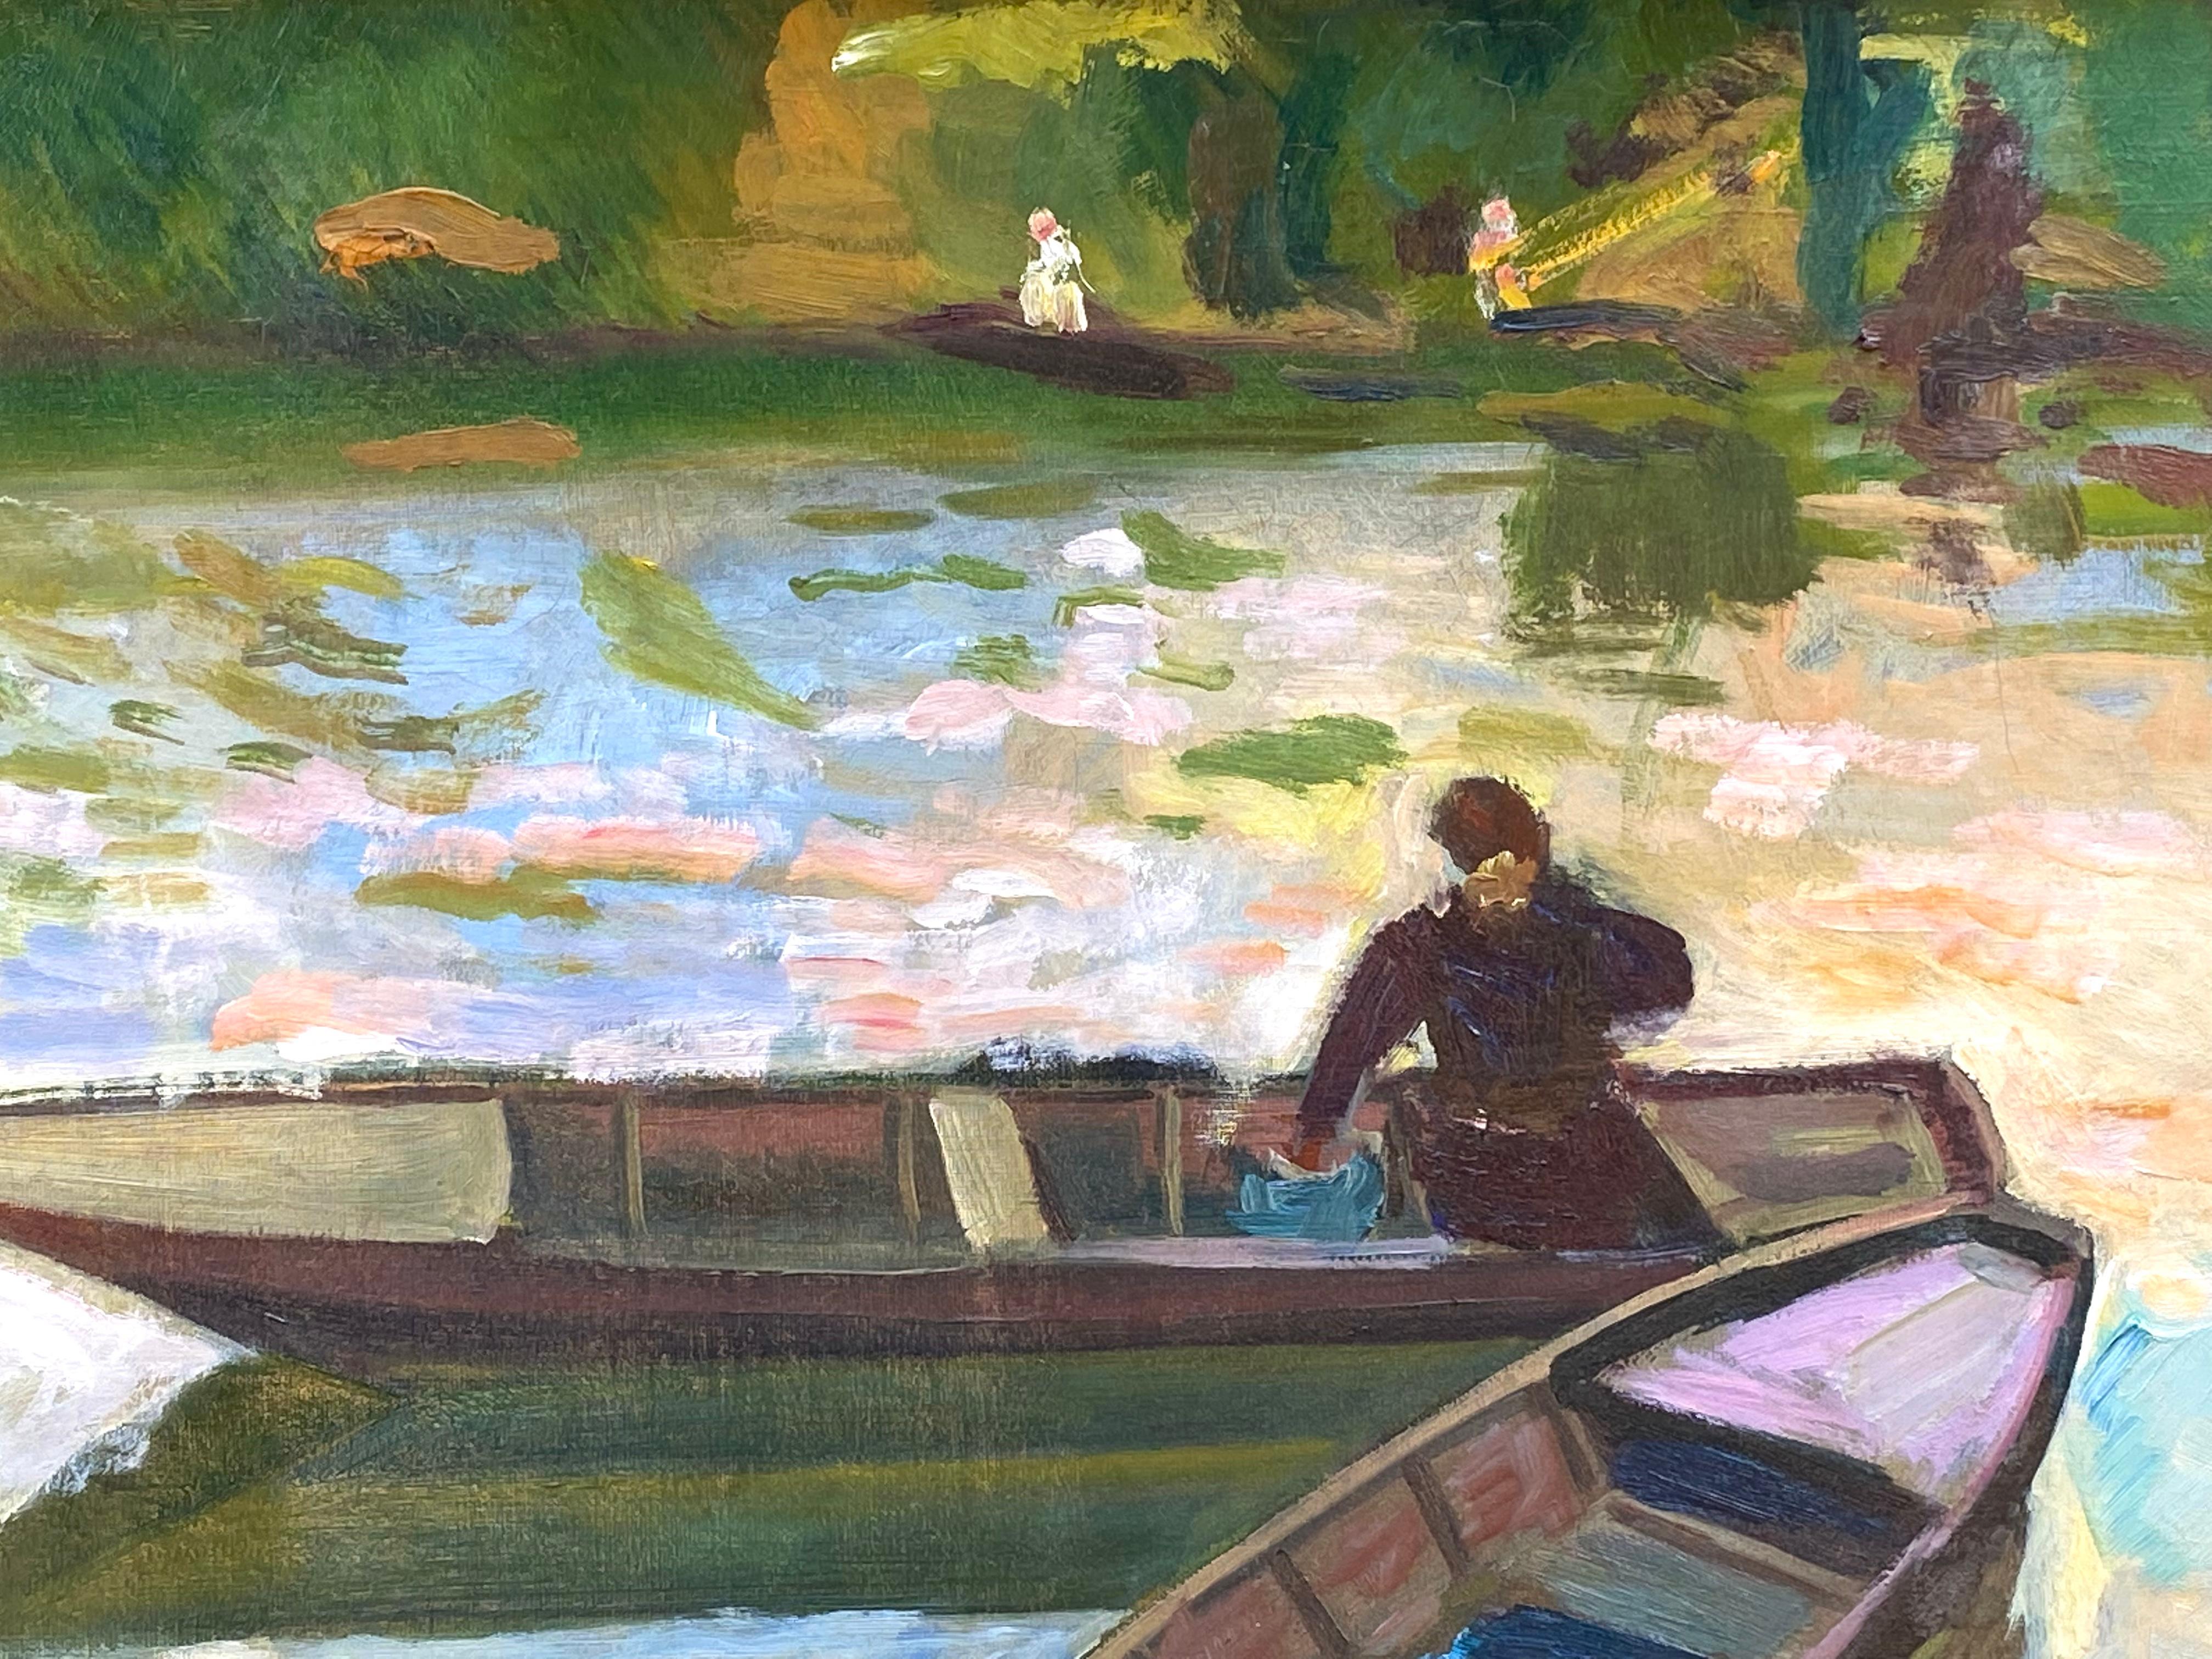 Magnifique huile sur toile post impressionniste de l'artiste français Edmund Amedee Heuze. Signé en bas à droite. Circa 1920.  L'état de la peinture est très bon. Pas de restaurations. Ses peintures sont rarement mises sur le marché. Le tableau est